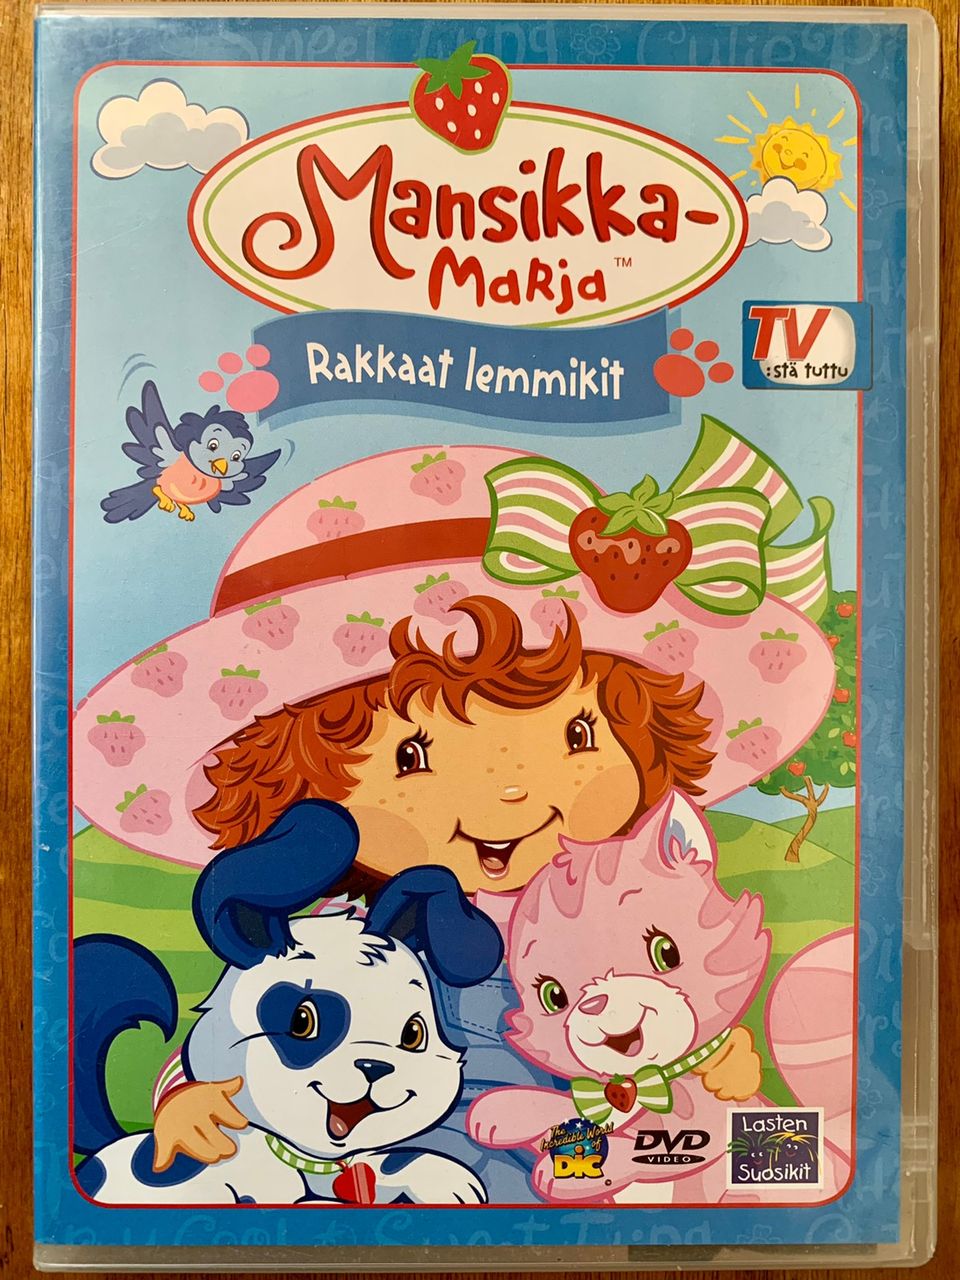 Mansikka-Marja Rakkaat lemmikit DVD